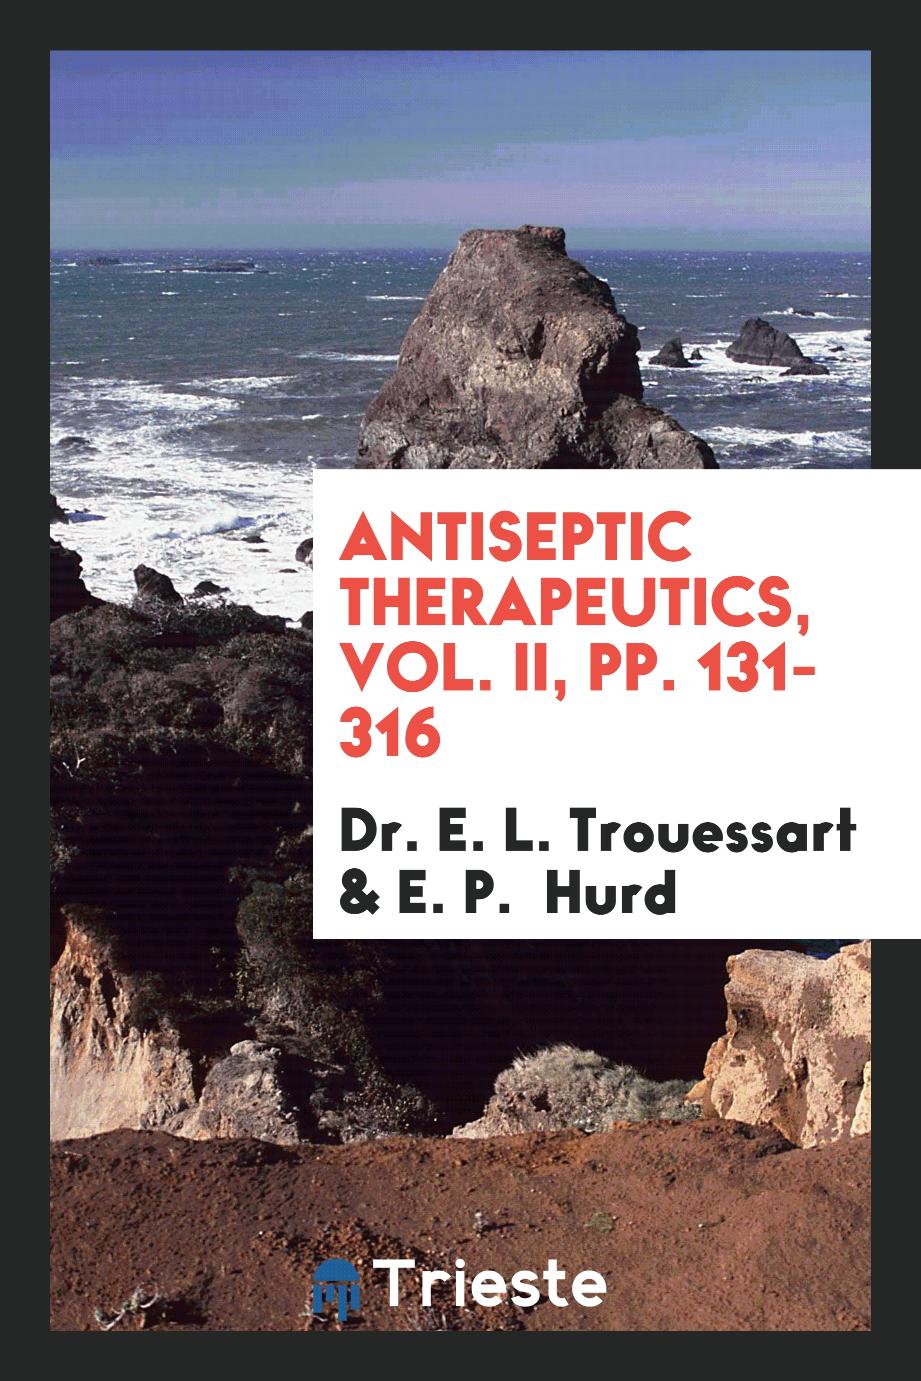 Antiseptic Therapeutics, Vol. II, pp. 131-316